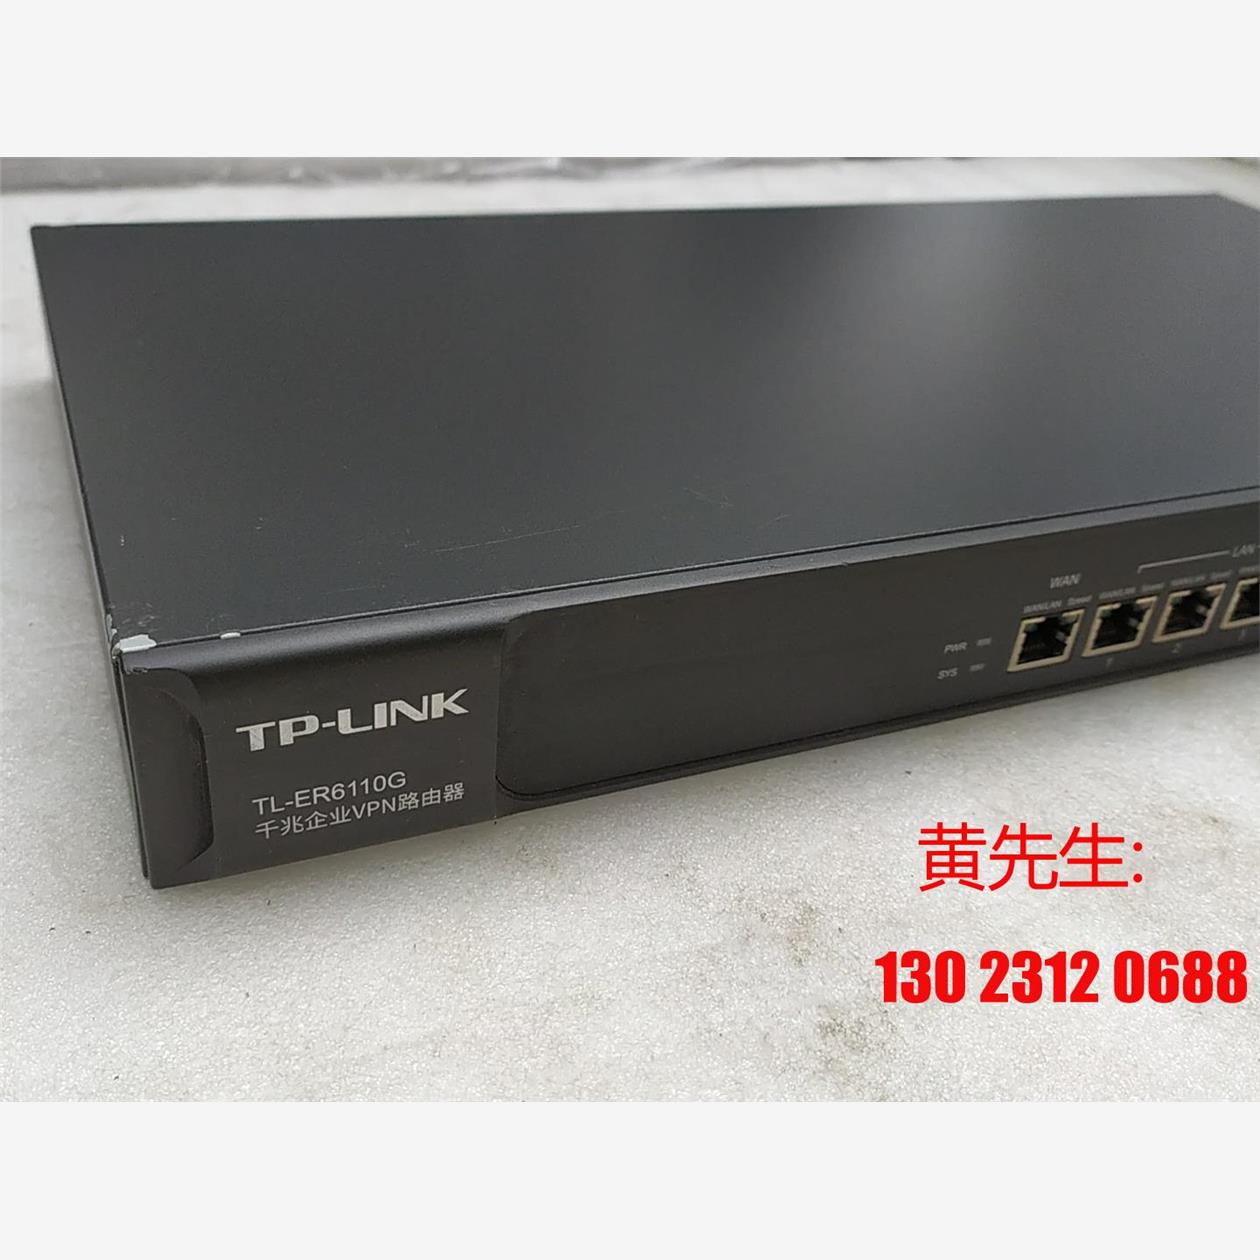 TP-LINK TL-ER6110G企业级千兆路由器功能议价-图0